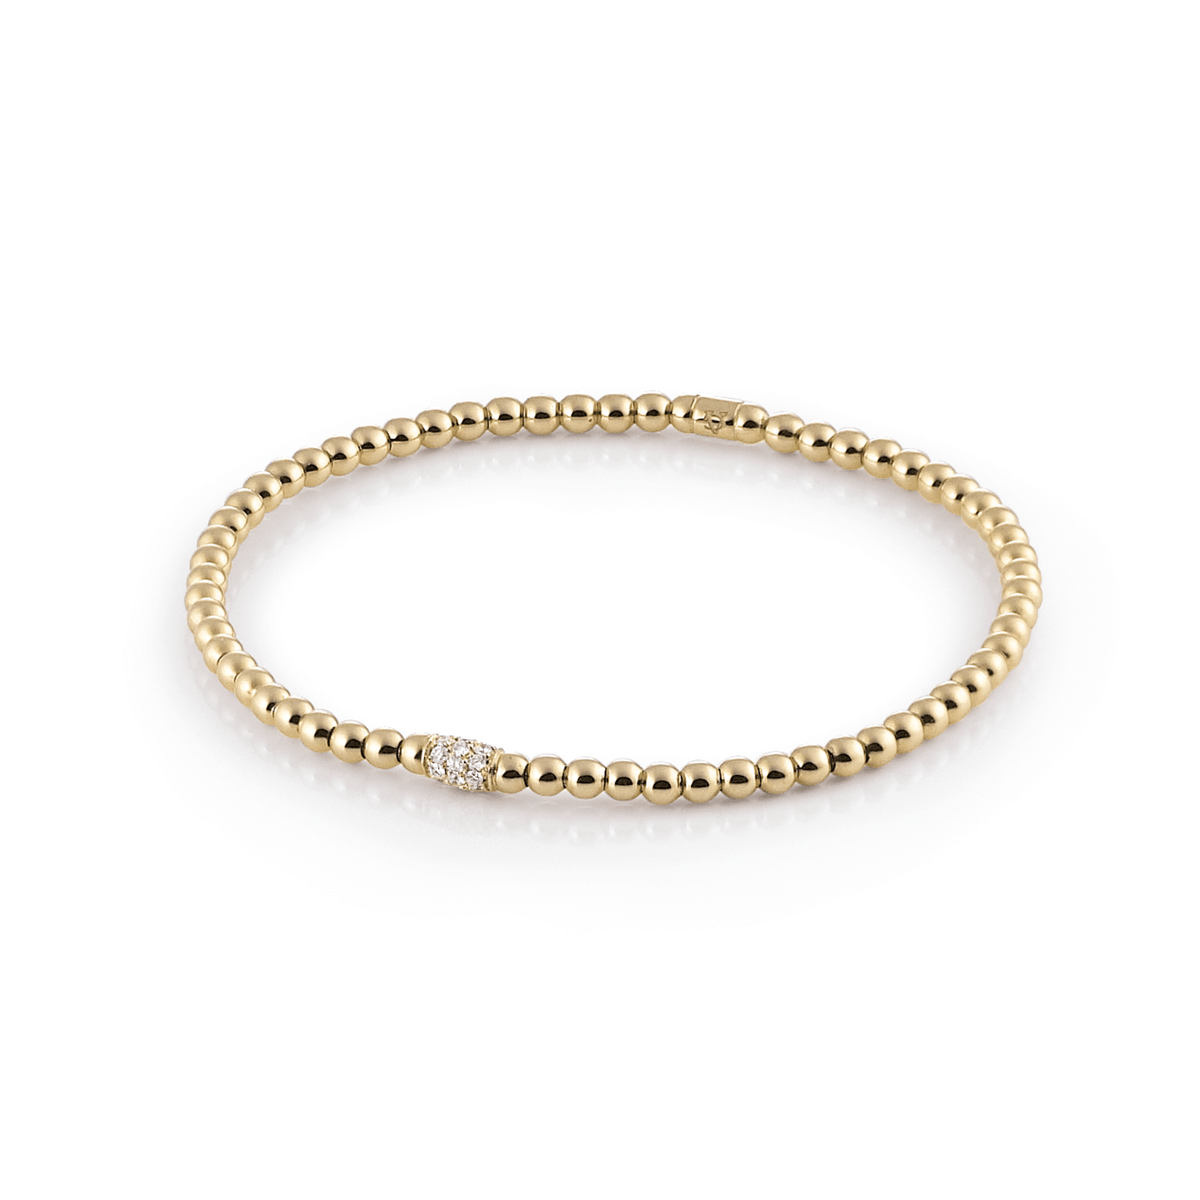 Al Coro Stretchy Bracelet in 18k Rose Gold with Diamonds - Orsini Jewellers